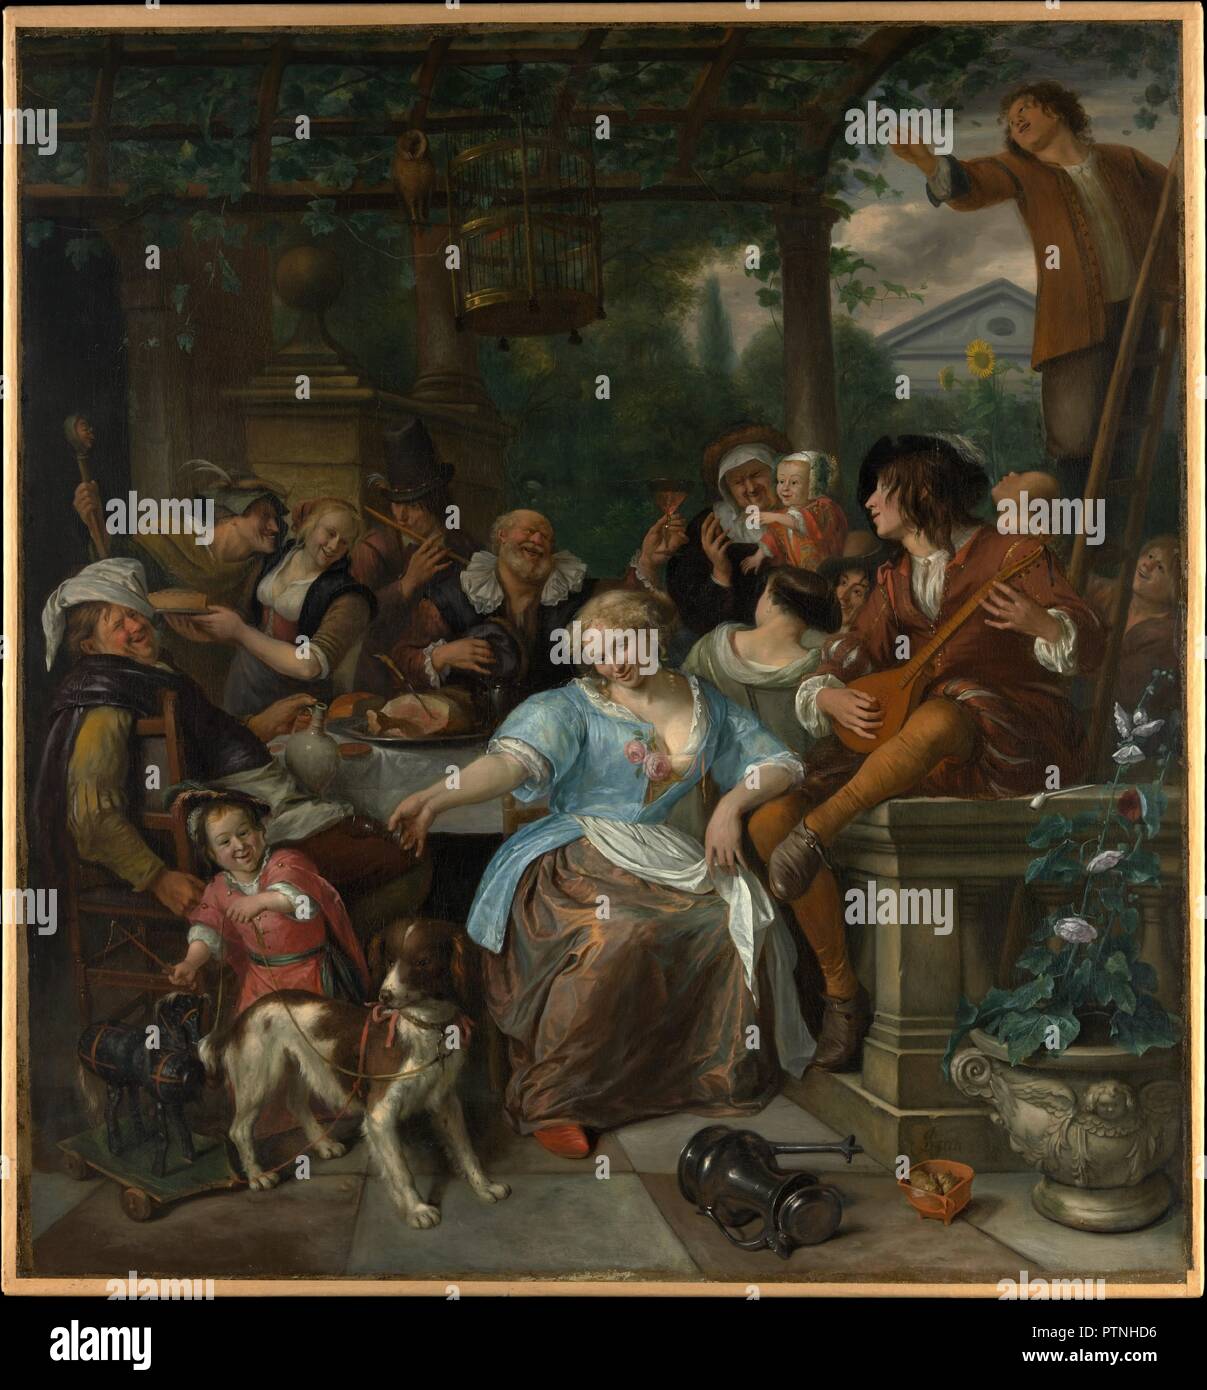 Merry Company sur une terrasse. Artiste : Jan Steen (Néerlandais, Leyde Leyde 1626-1679). Dimensions : 55 1/2 x 51 3/4 in. (141 x 131,4 cm). Date : ca. 1670. Dans cette peinture de la fin de 1673-75, Steen jette lui-même comme l'aubergiste d'ébriété sur la gauche. La seconde épouse de l'artiste, Maria, probablement modélisée pour la pose provocante hôtesse d'accueil (elle porte un tablier) dans le centre. Son verre et le fat man's jug sont sexuellement suggestif, mais la femme se familiarisait avec le jeune musicien et la forme de son cistre suggèrent qu'il a plus à lui offrir. Le garçon trop habillé sert de remarque à propos de marginal Banque D'Images